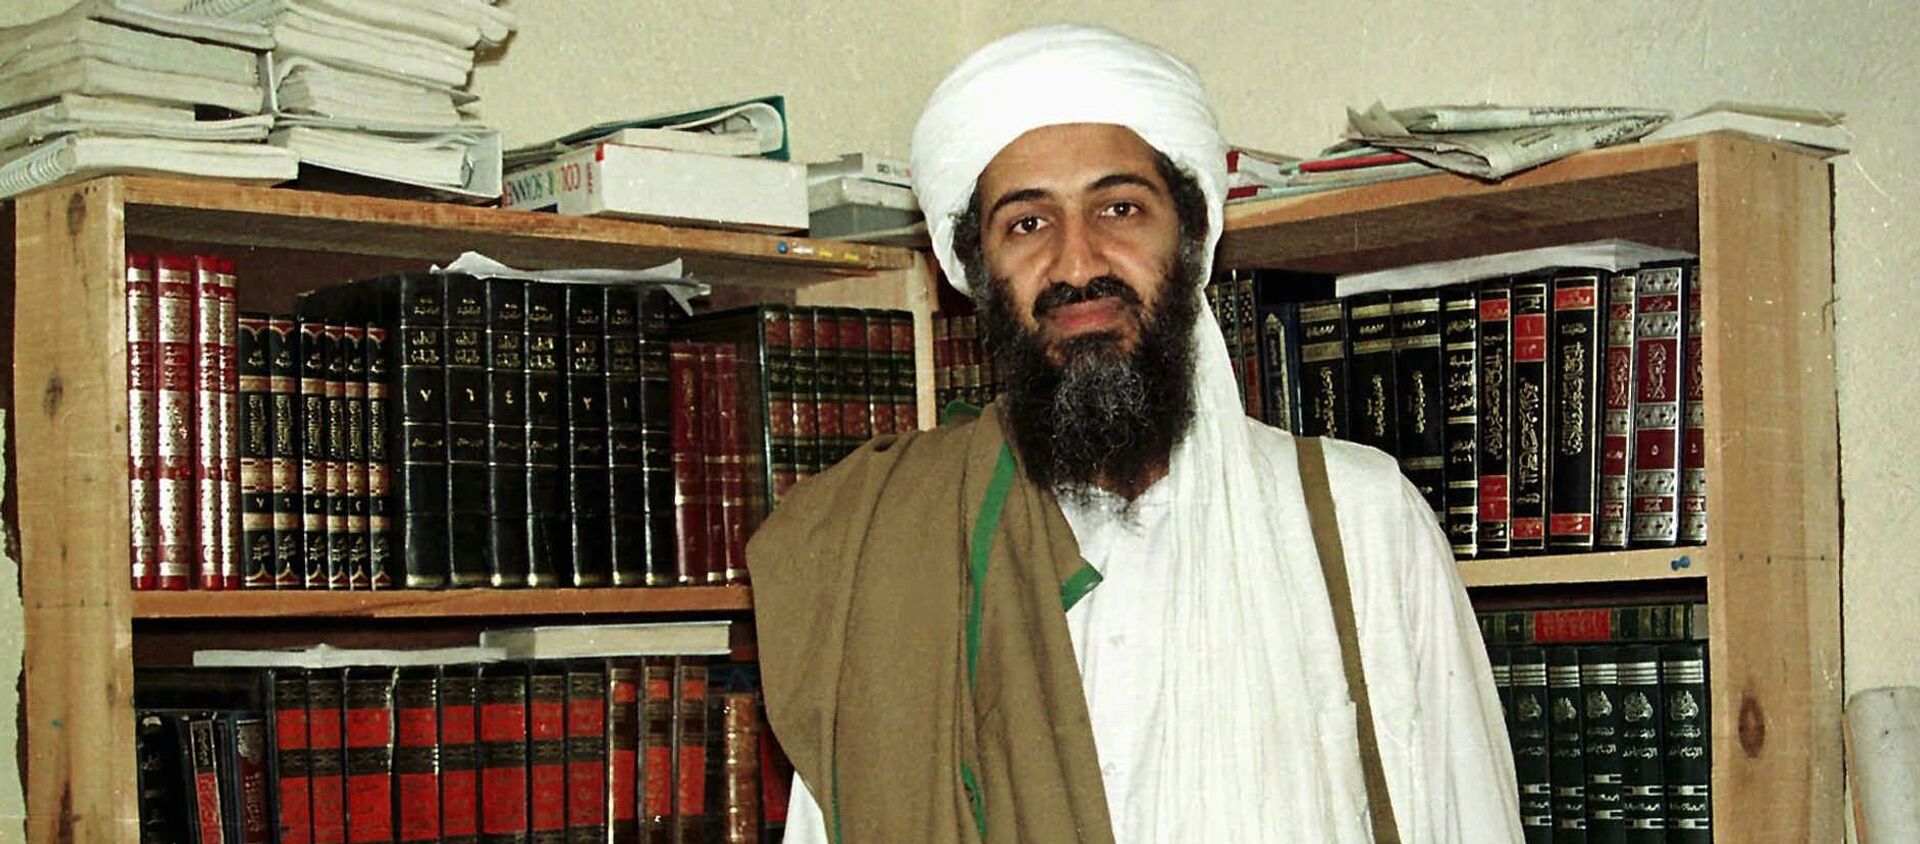 Al Qaida leader Osama bin Laden is seen in Afghanistan. (File) - Sputnik Mundo, 1920, 08.09.2020